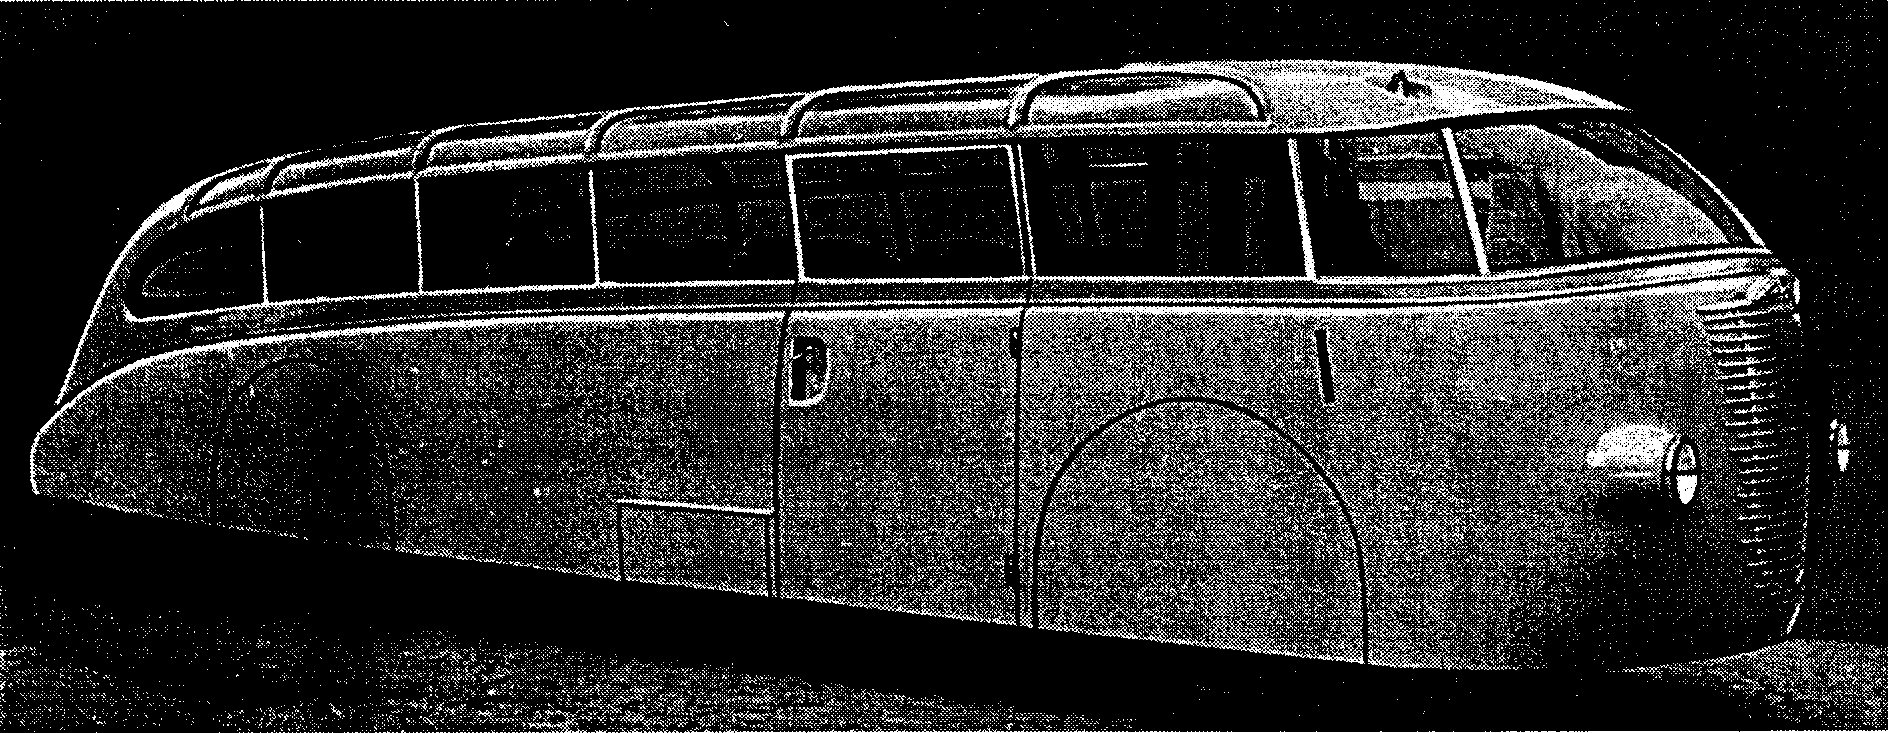 Μόνο με την εισαγωγή του «τραμ λεωφορείου» από τον F. GAUBSCHAT το 1936, το σχήμα των λεωφορείων απομακρύνθηκε μακριά από τα αυτοκίνητα.